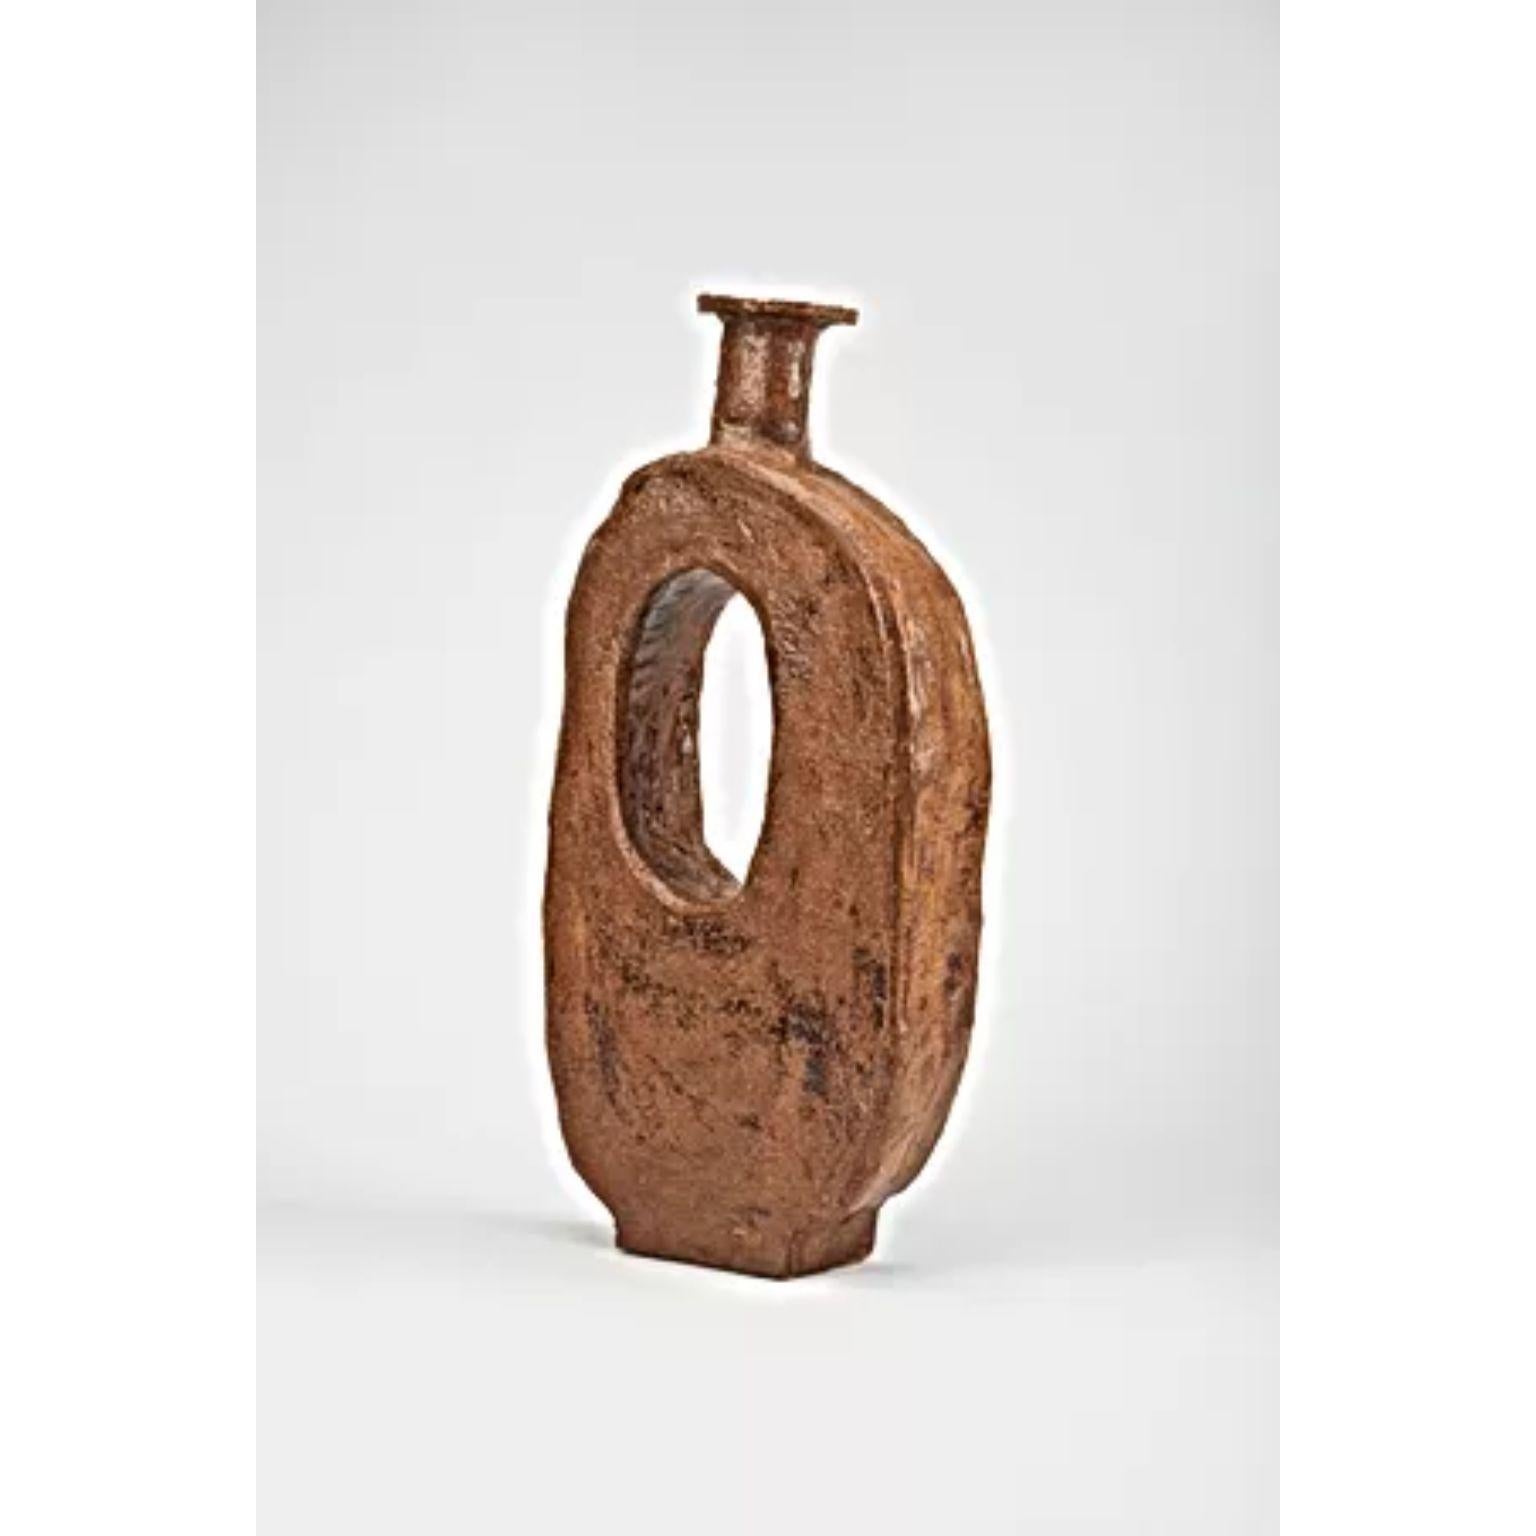 Große Vase Taju von Willem Van Hooff.
Abmessungen: B 40 x T 10 x H 58 cm (Die Abmessungen können variieren, da es sich um handgefertigte Stücke handelt, die leichte Größenabweichungen aufweisen können)
MATERIALIEN: Steingut, Keramik, Pigmente und